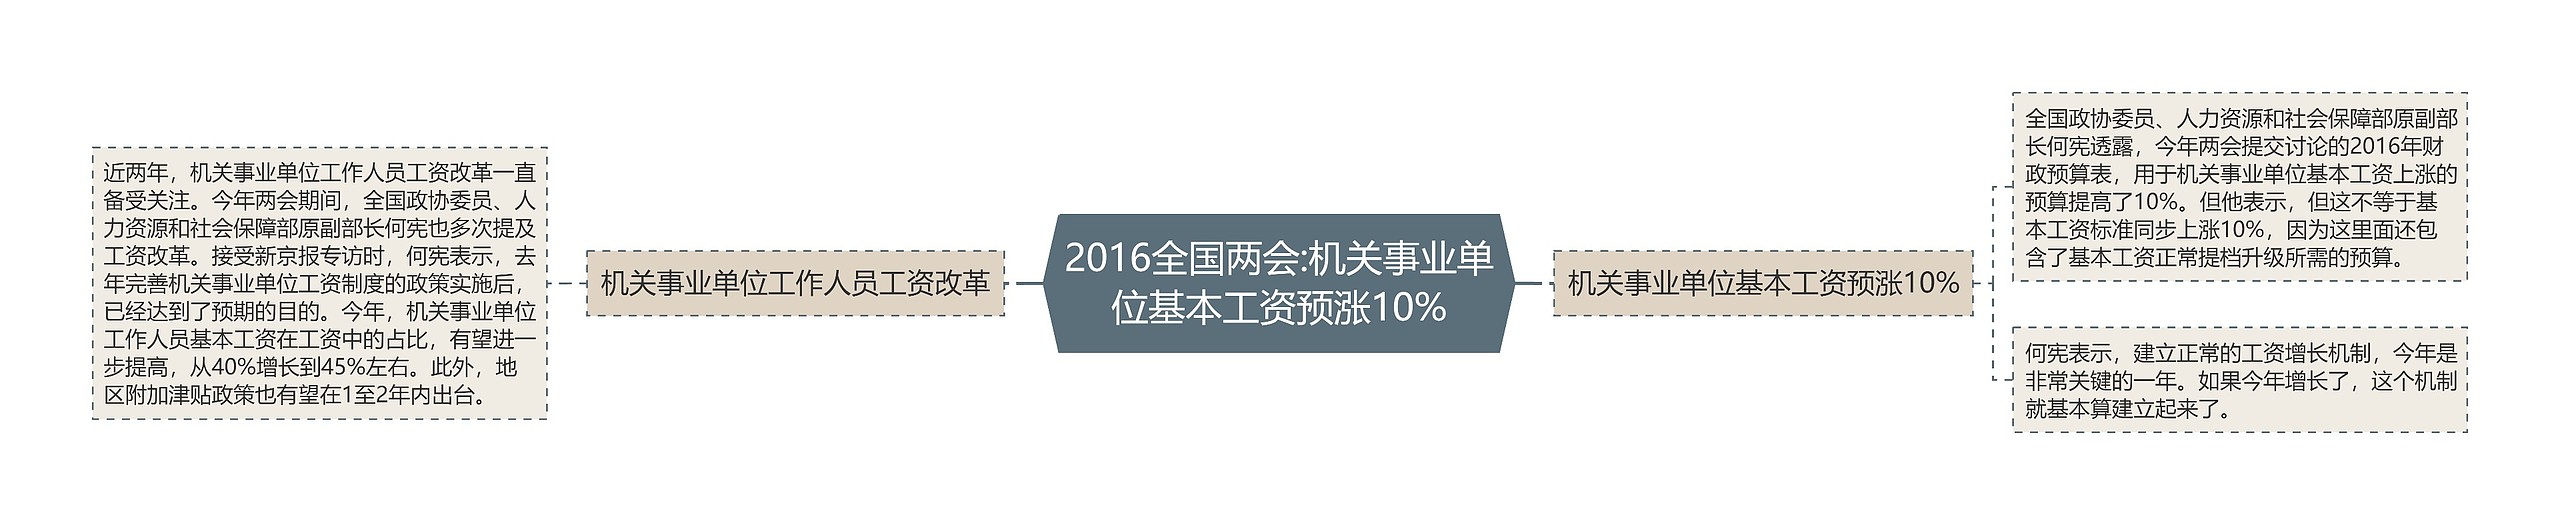 2016全国两会:机关事业单位基本工资预涨10%思维导图